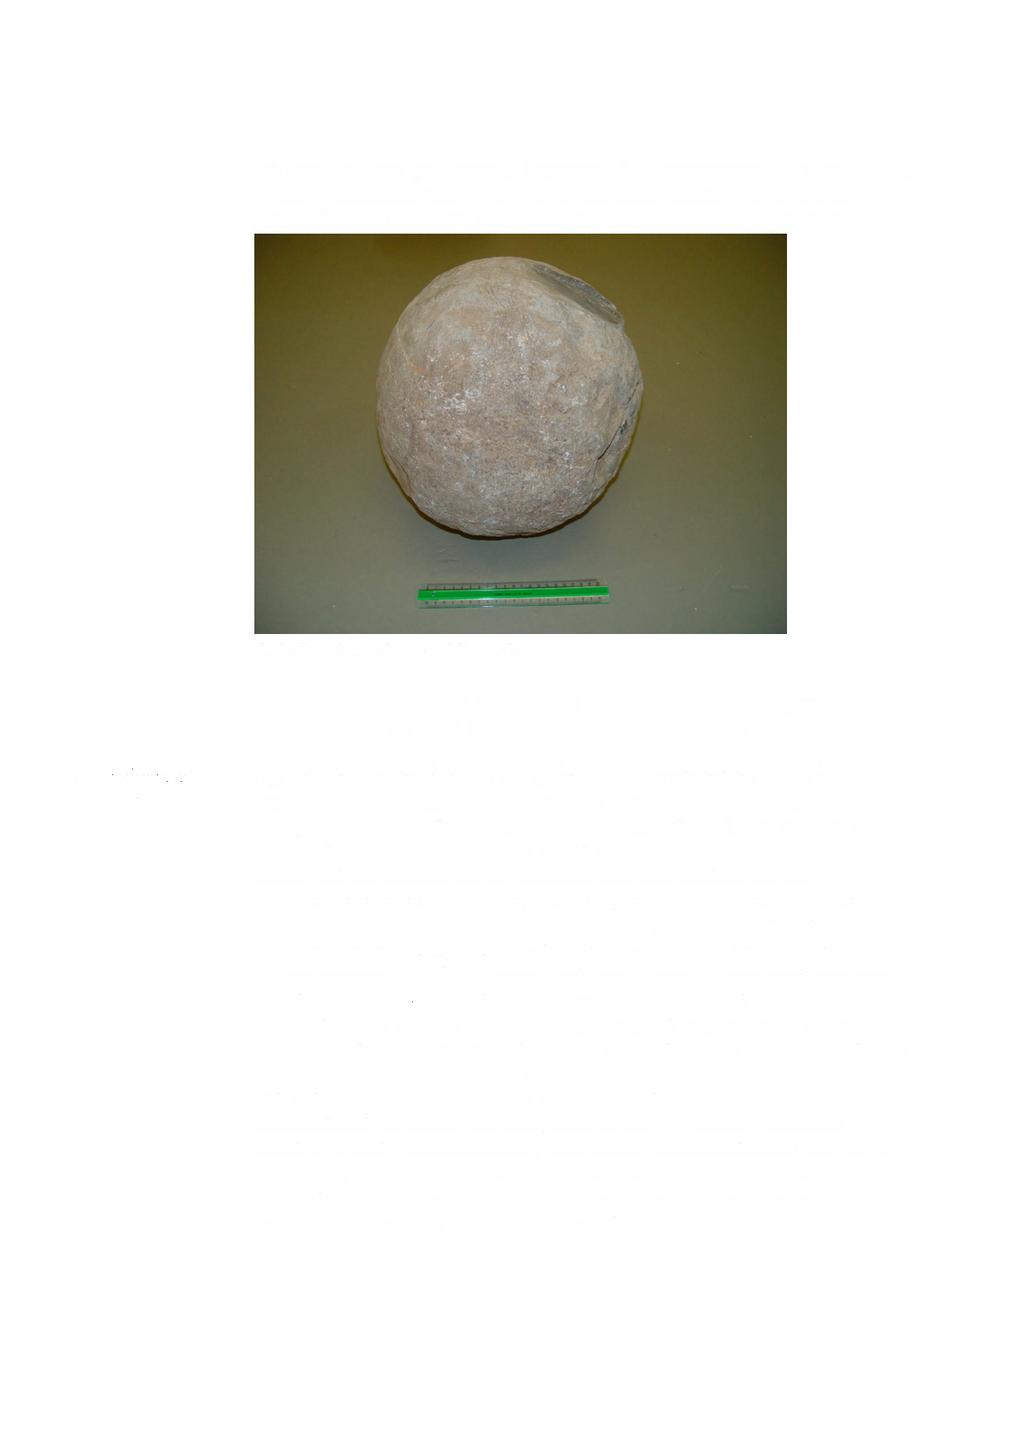 ARCHEOLOGISCHE WAARNEMING MOLENSTRAAT 10 de kogel is niet gelijkmatig afgerond. De steensoort viel niet dadelijk te determineren. Mogelijk is het een zand/kalksteen soort.